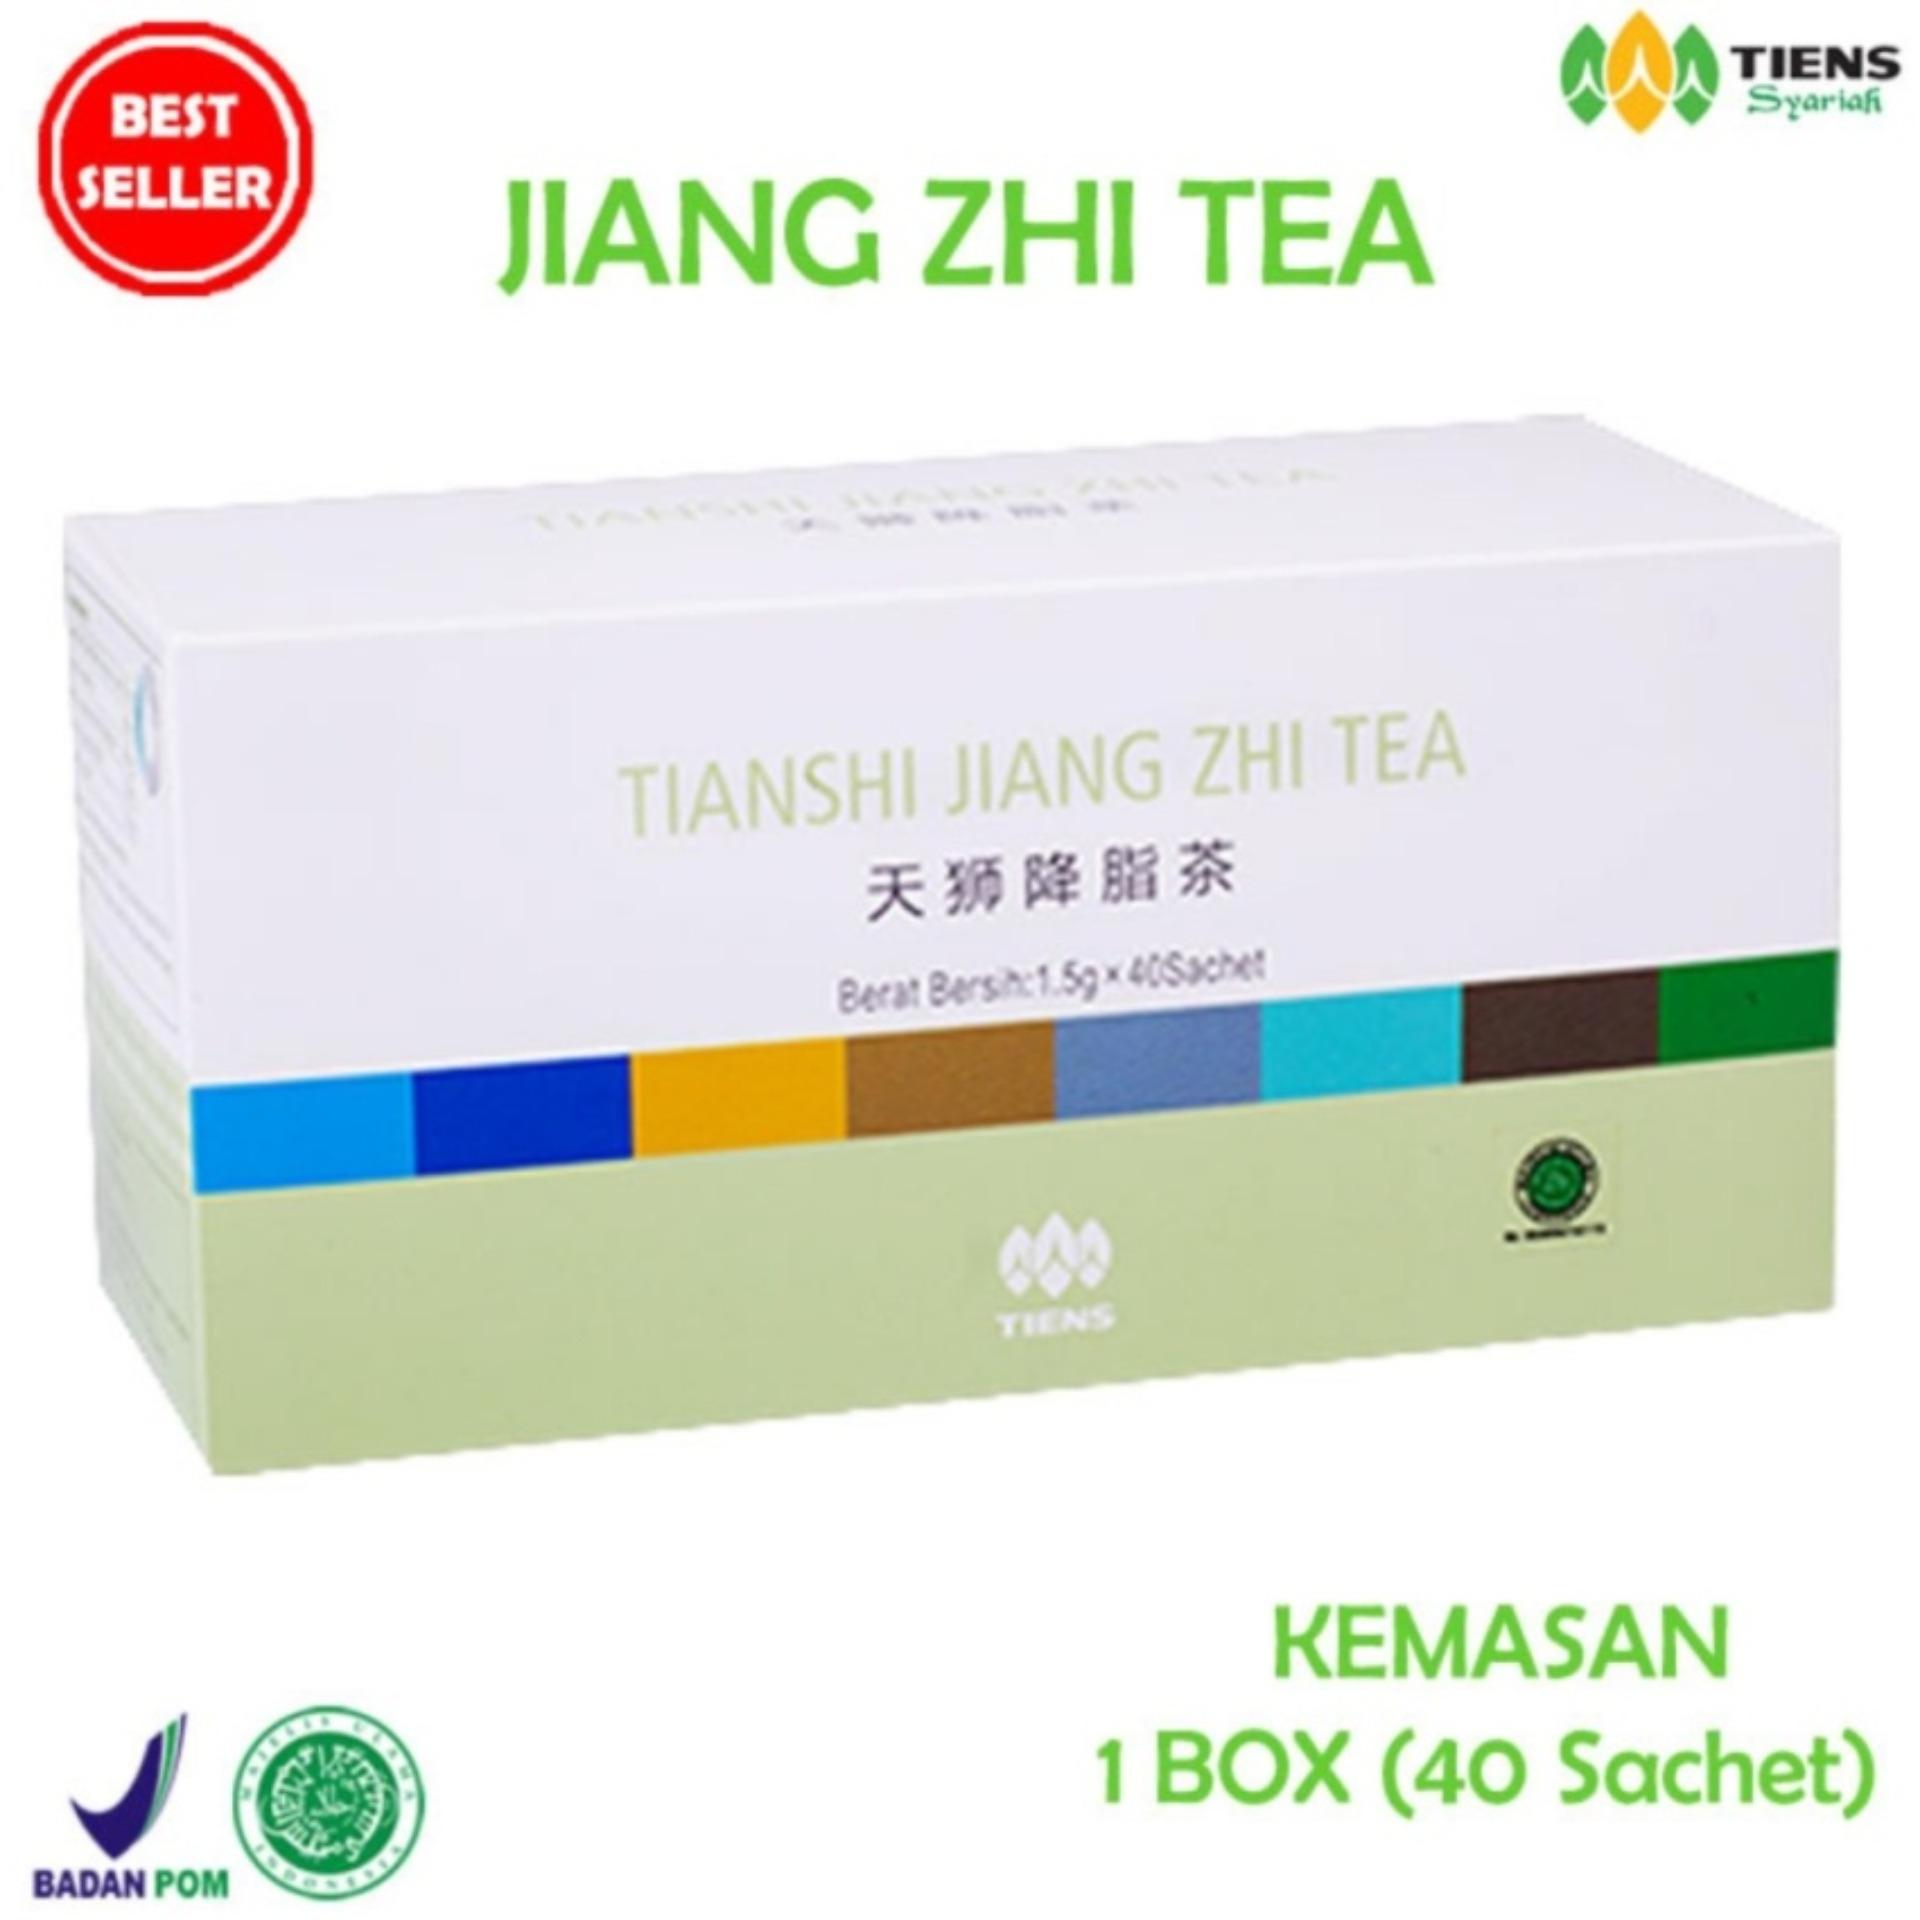 Tiens Jiang Zhi Tea - Teh Penurun Kolesterol, Asam Urat, Darah Tinggi, dan Teh Detox